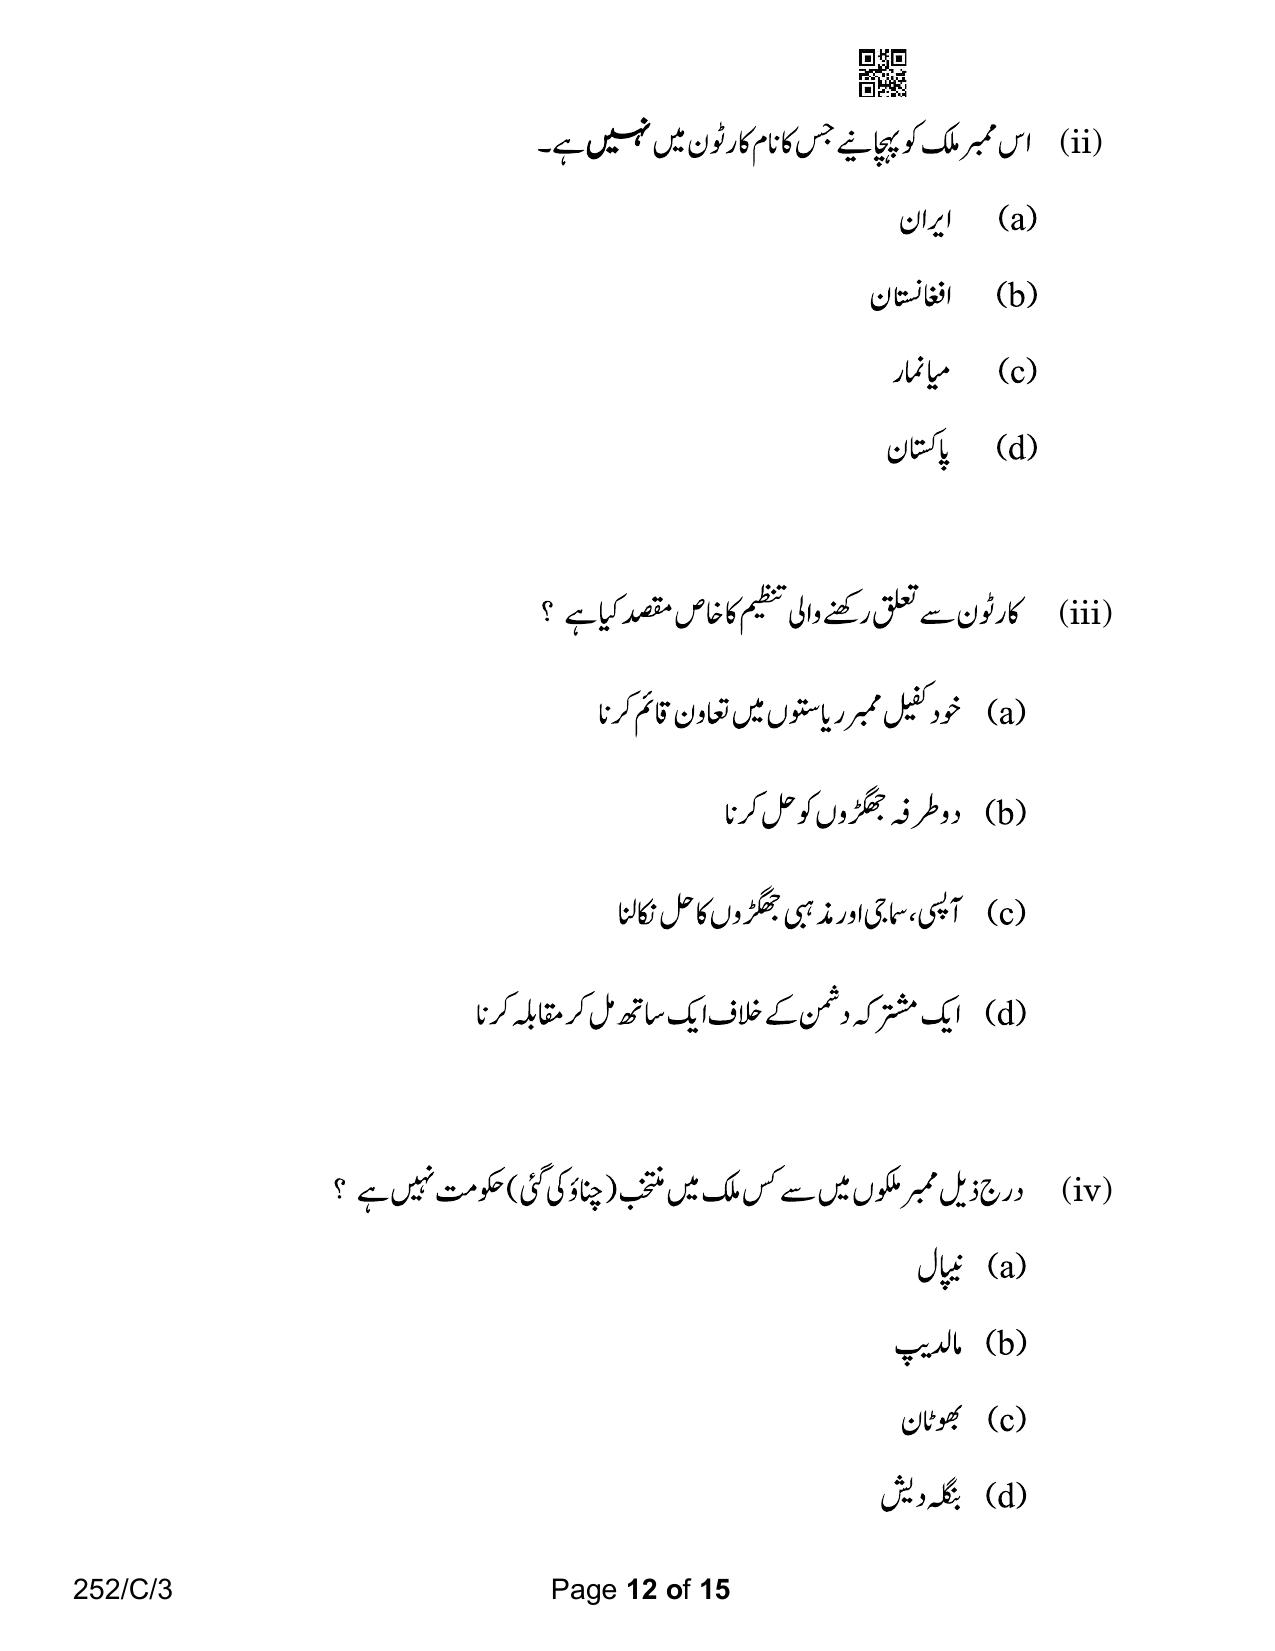 CBSE Class 12 252-3 Political Science Urdu Version 2023 (Compartment) Question Paper - Page 12